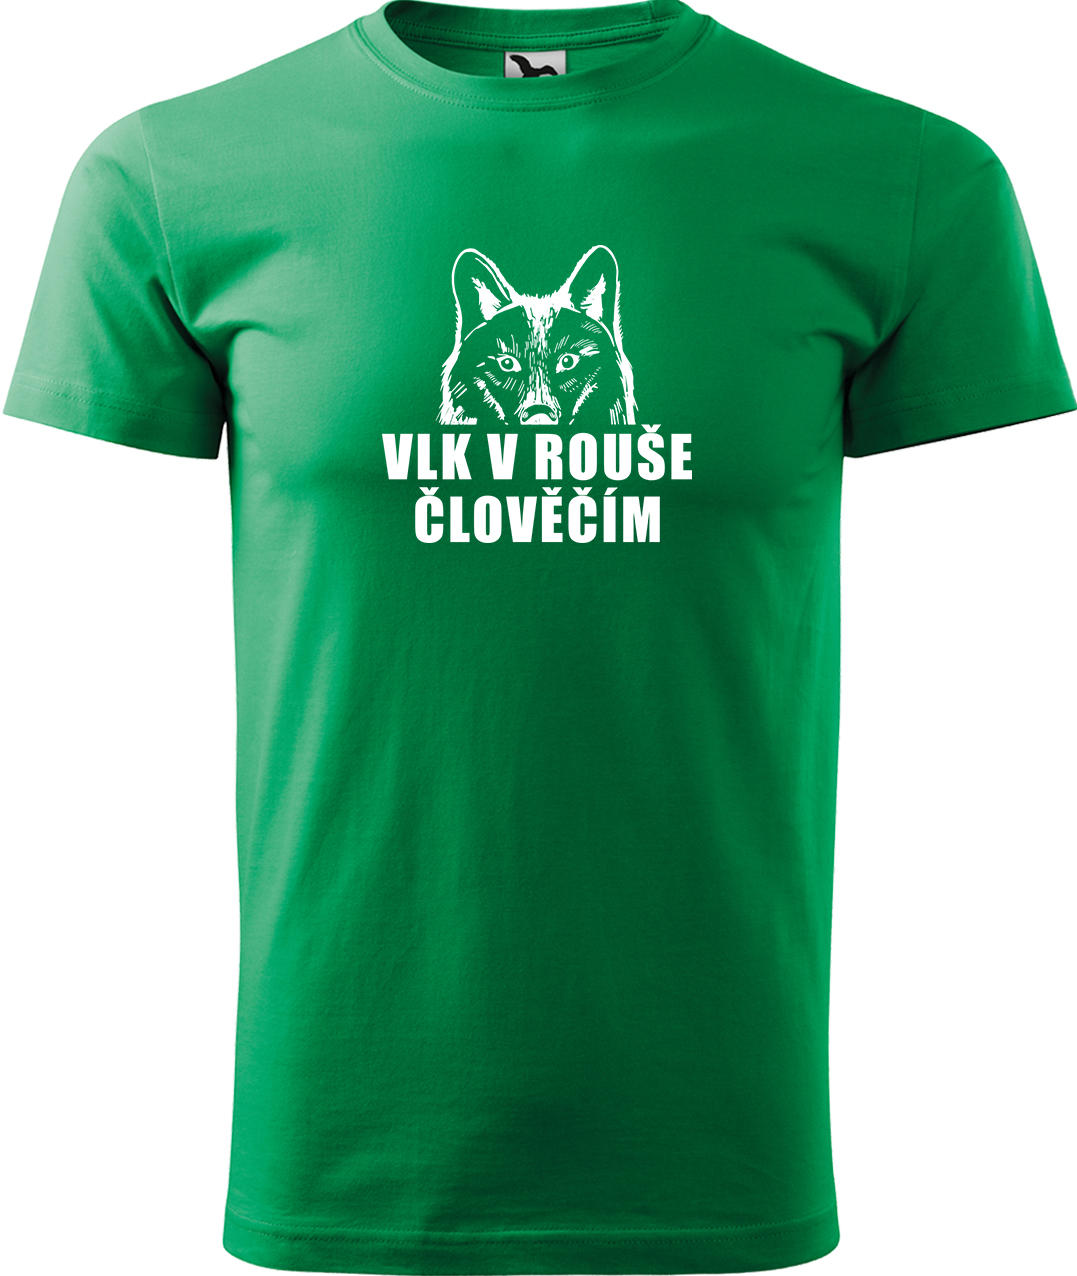 Pánské tričko s vlkem - Vlk v rouše člověčím Velikost: XL, Barva: Středně zelená (16)